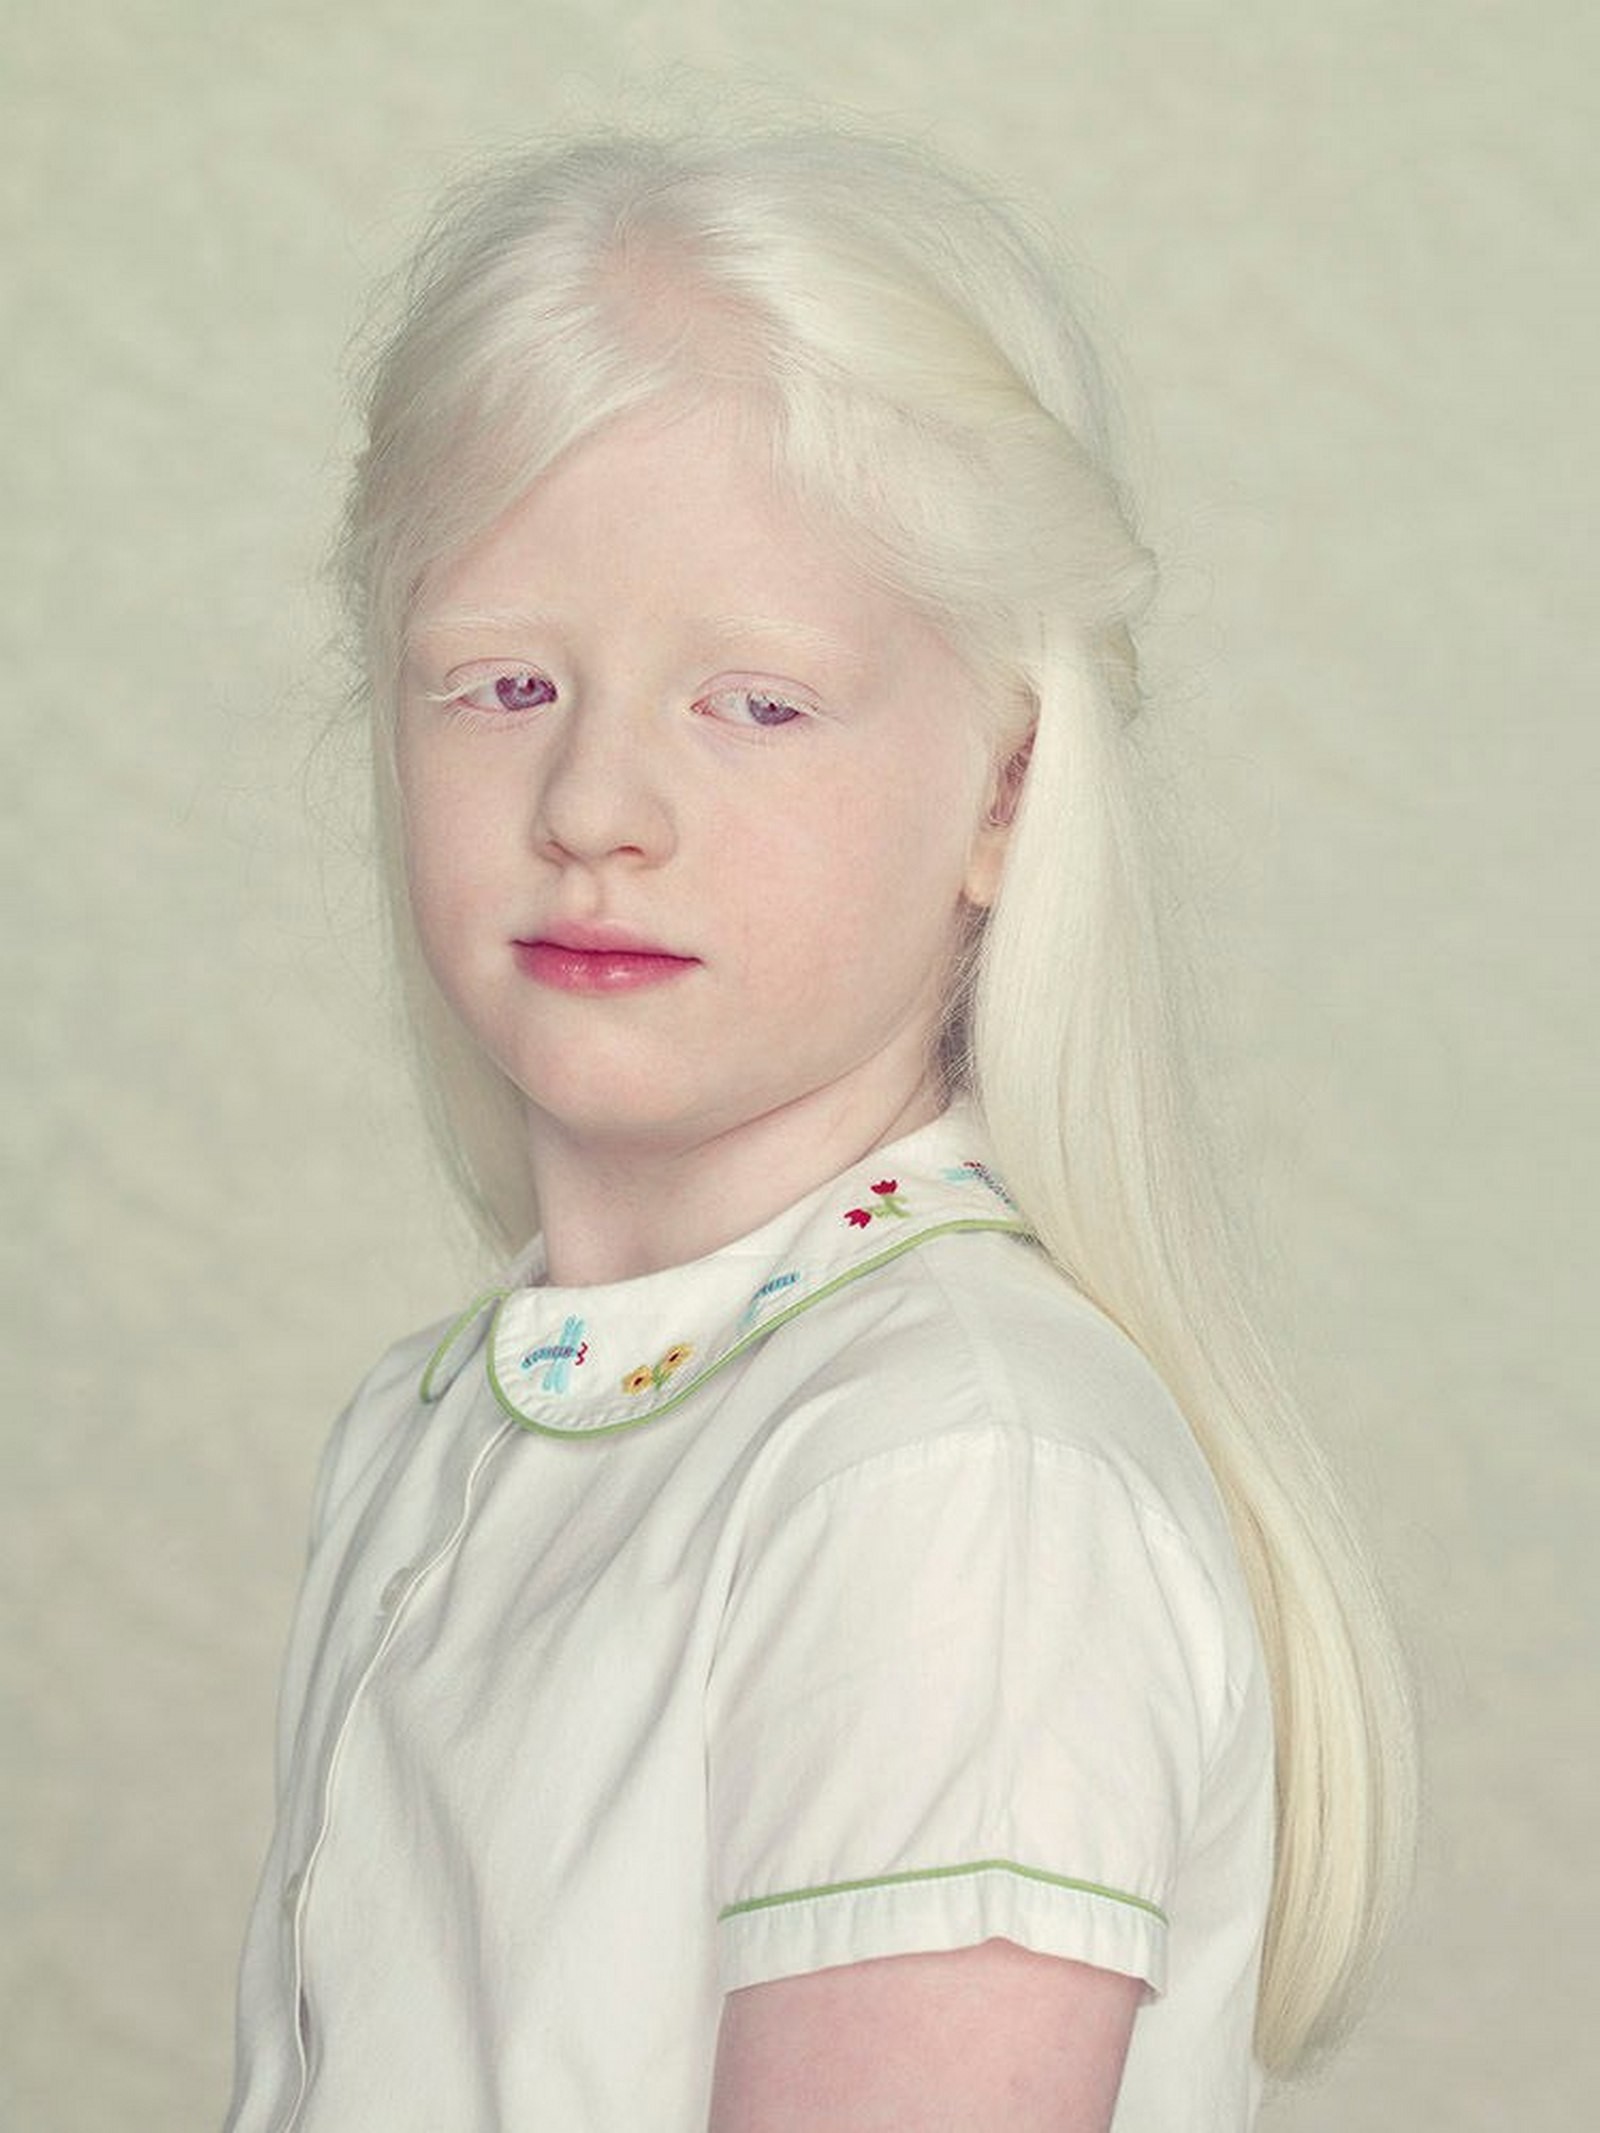 Как люди рождаются альбиносами. Глазокожный альбинизм. Десислава альбинос. Натиа Макаридзе альбинос.